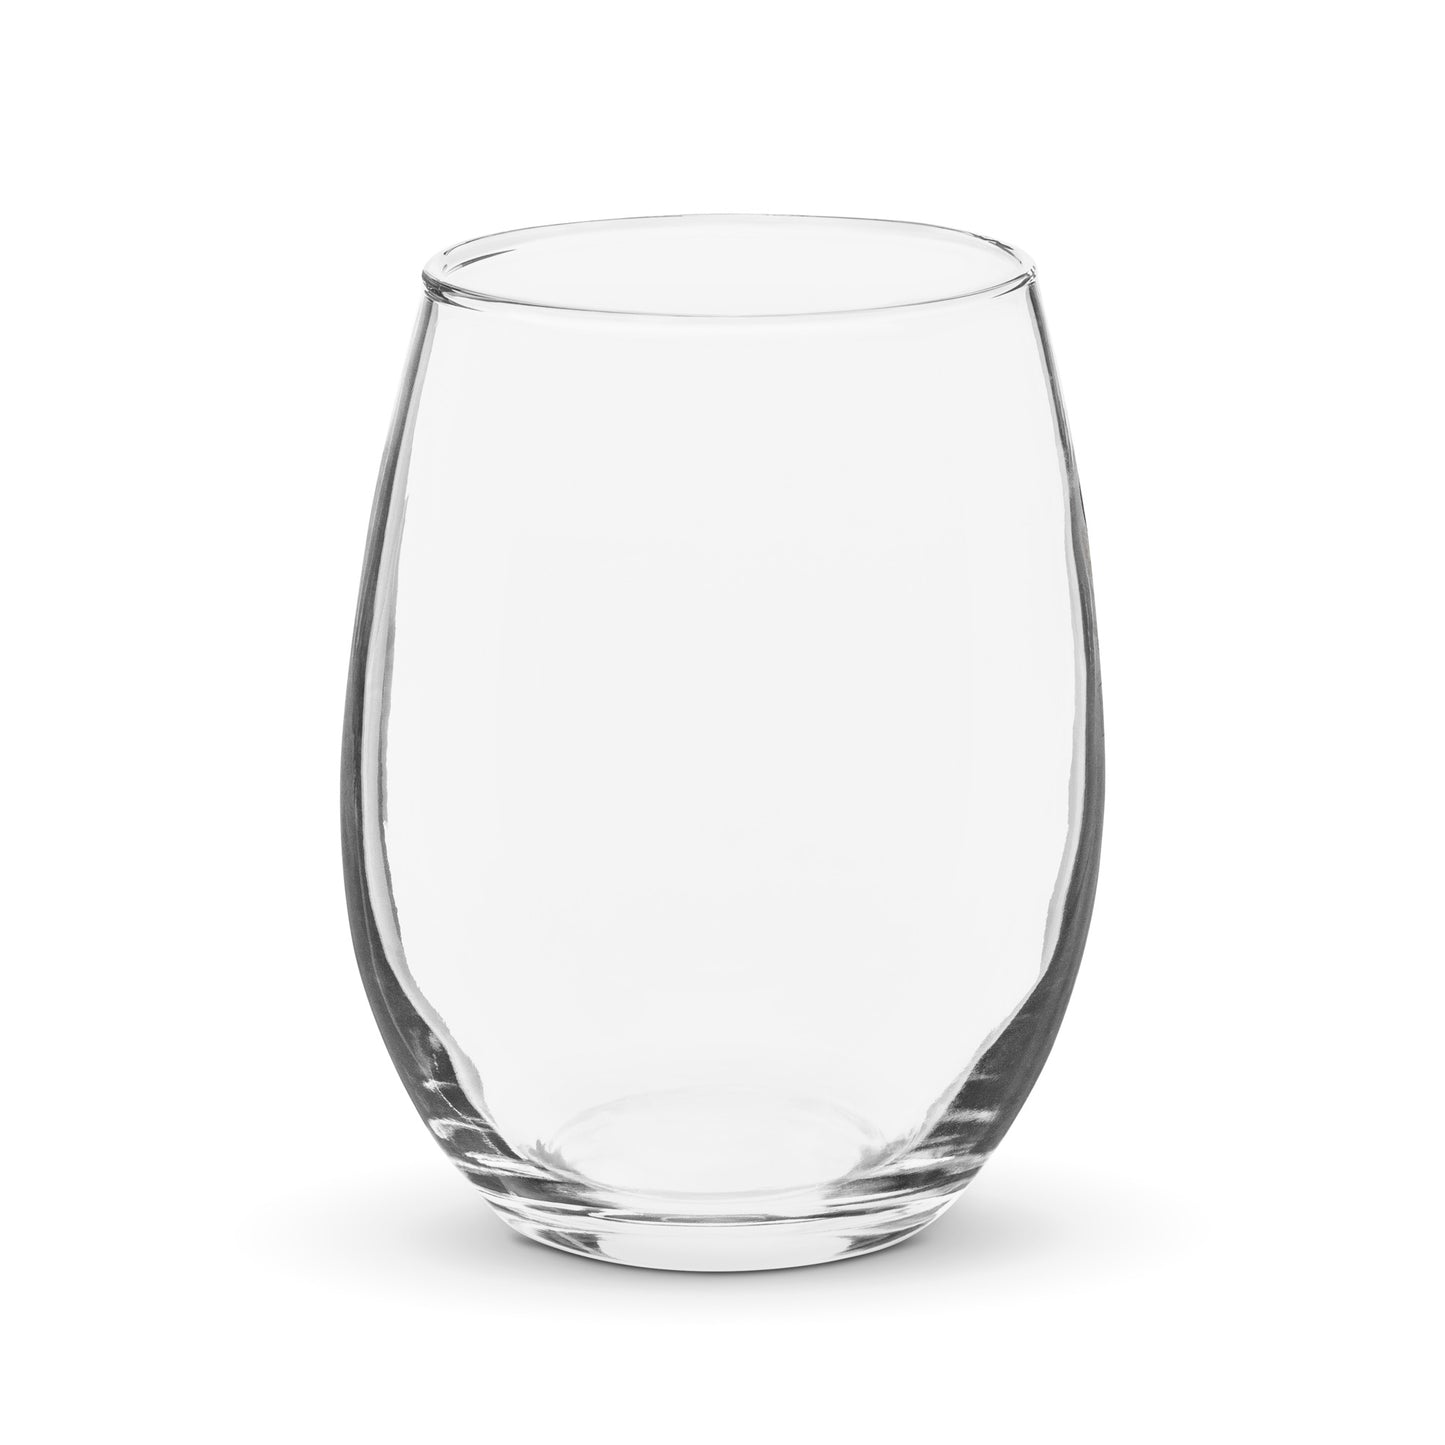 Stemless wine glass: WINE|